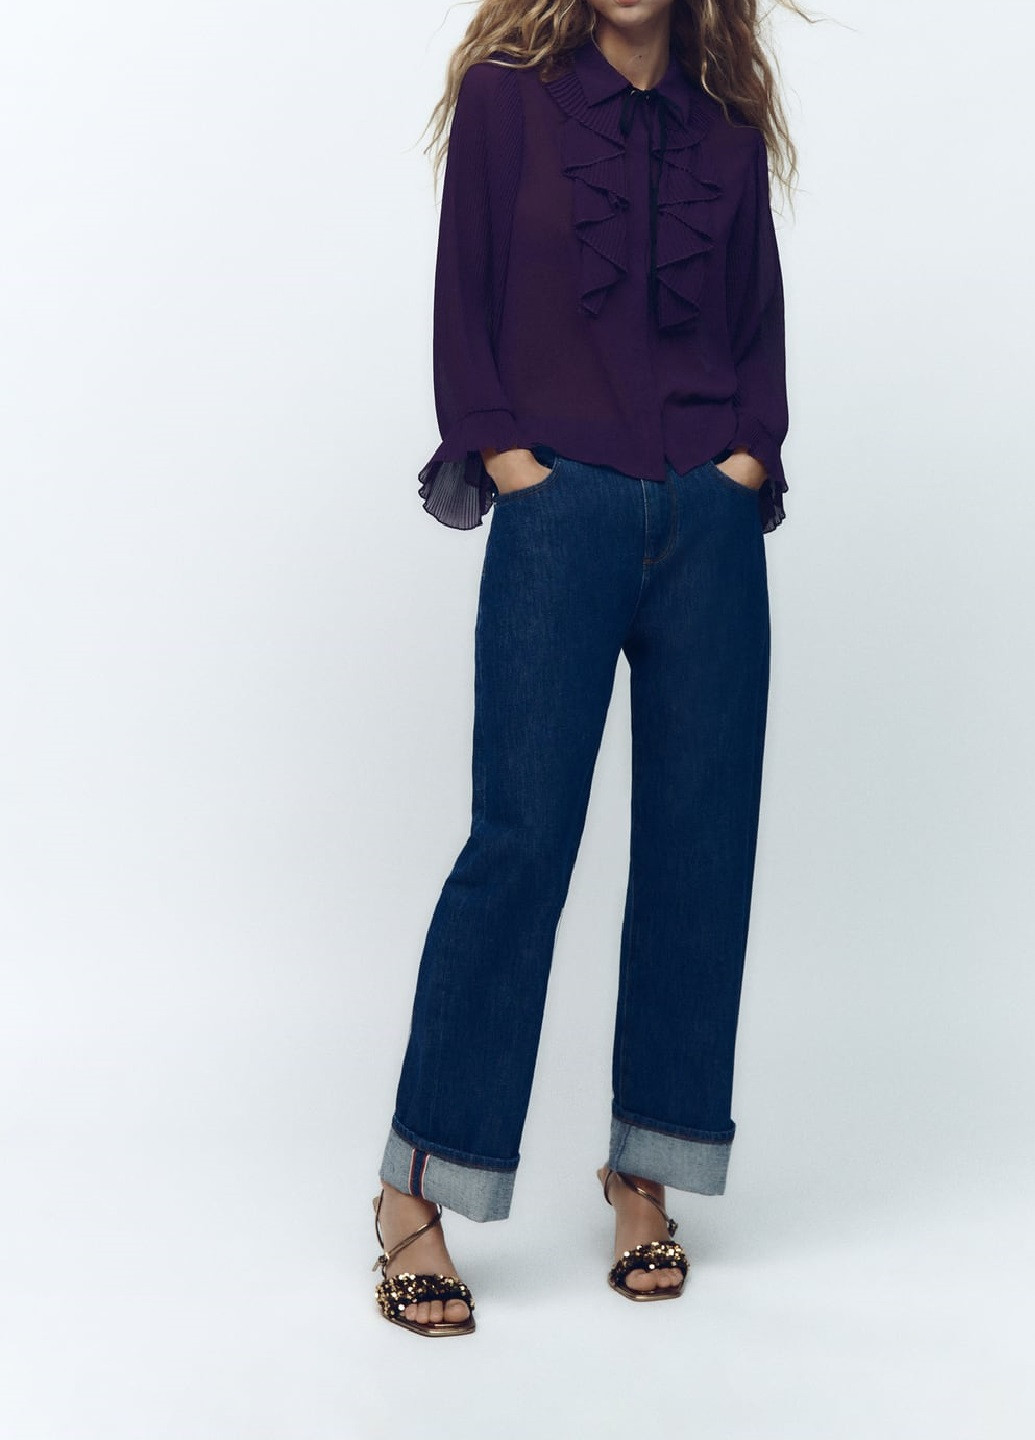 Фиолетовая демисезонная блуза Zara